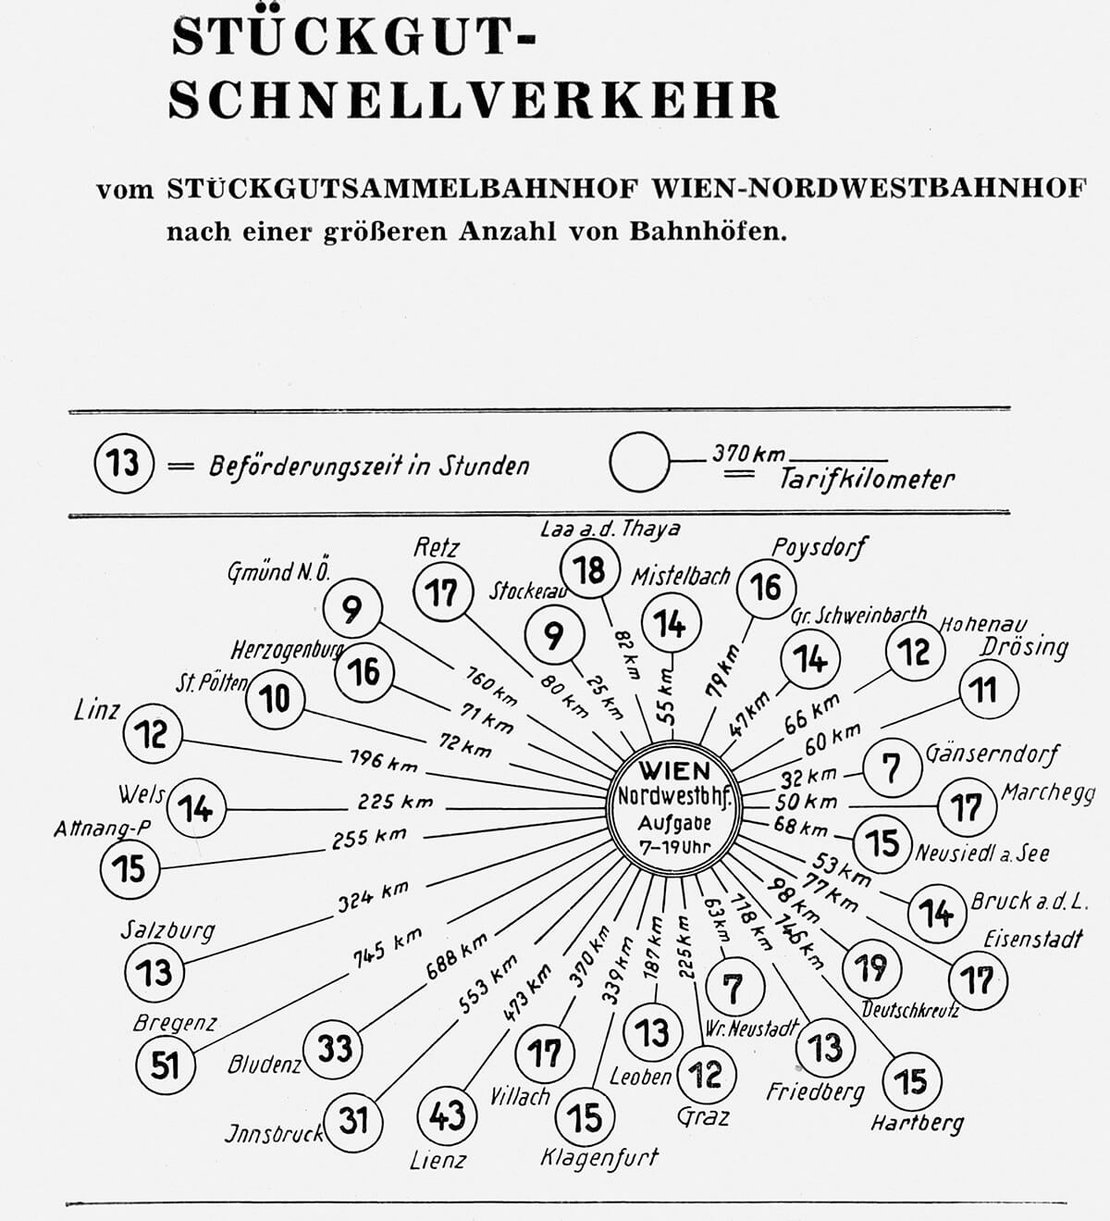 Diagramm aus dem Jahr 1951, abgebildet in der Publikation „Was weißt Du von der Eisenbahn?“, Düsseldorf 1971, ÖBB Archiv, Wien 